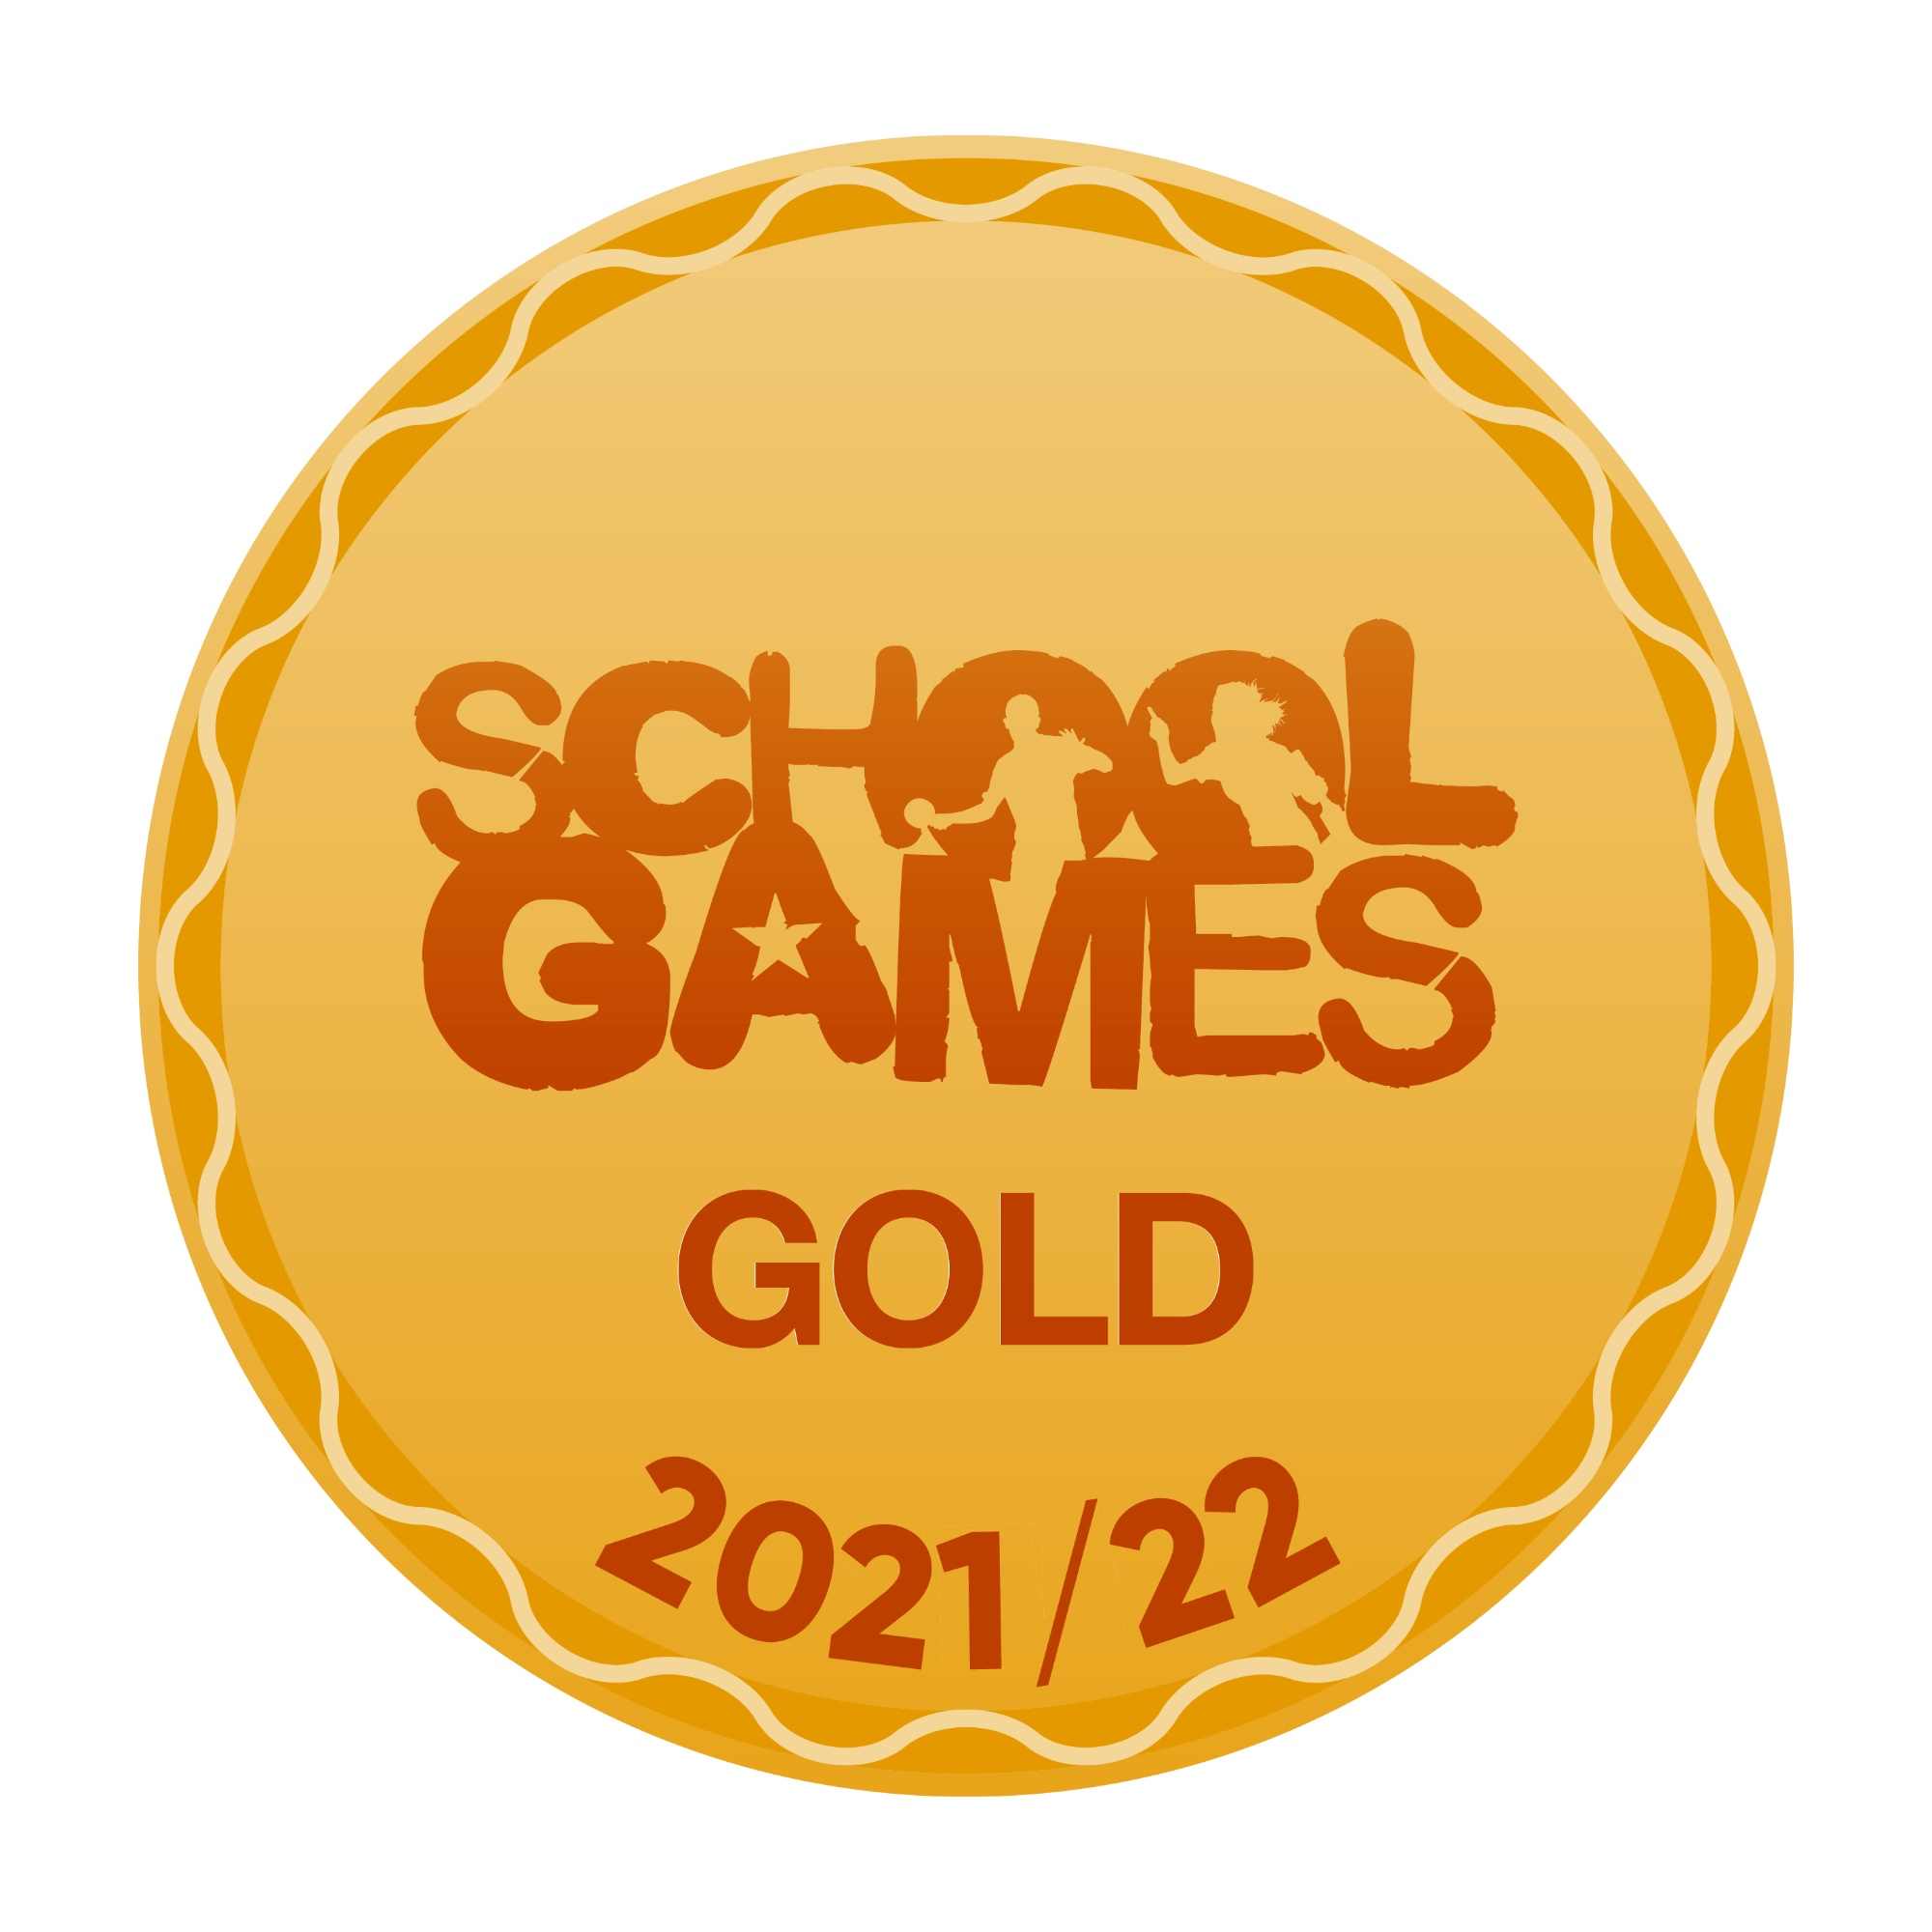 School Games Mark 2021/22